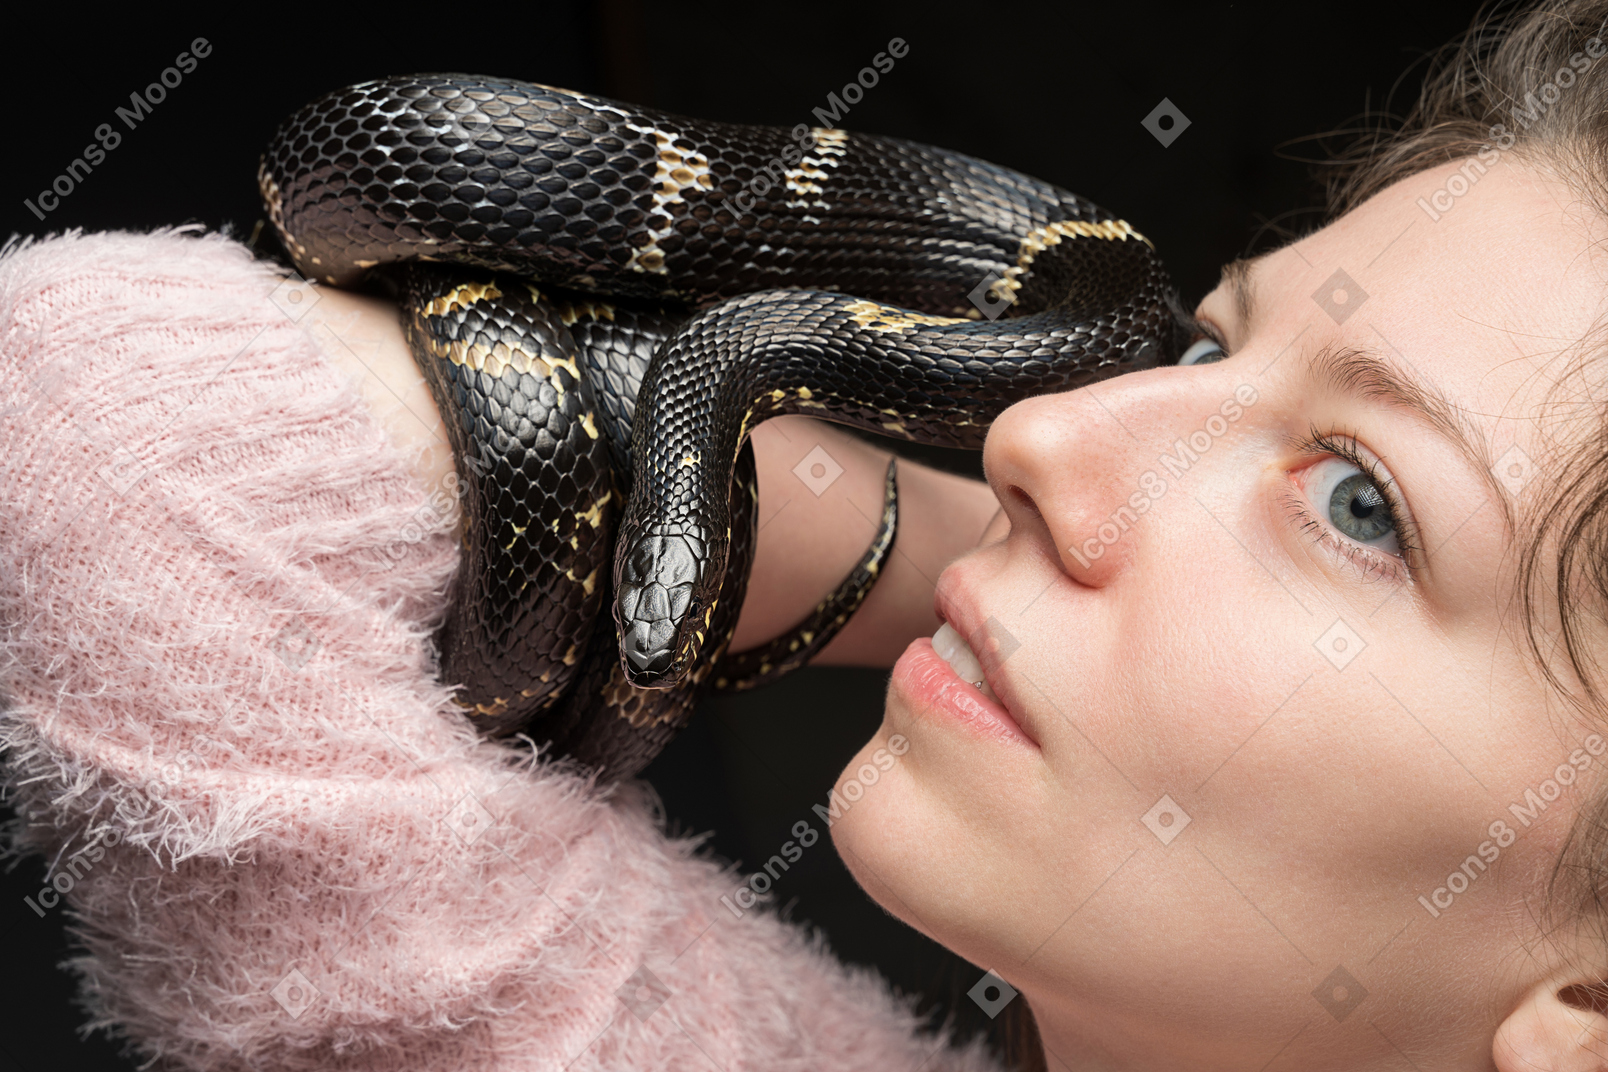 Cobra preta listrada, curvando-se em torno da mão de uma mulher